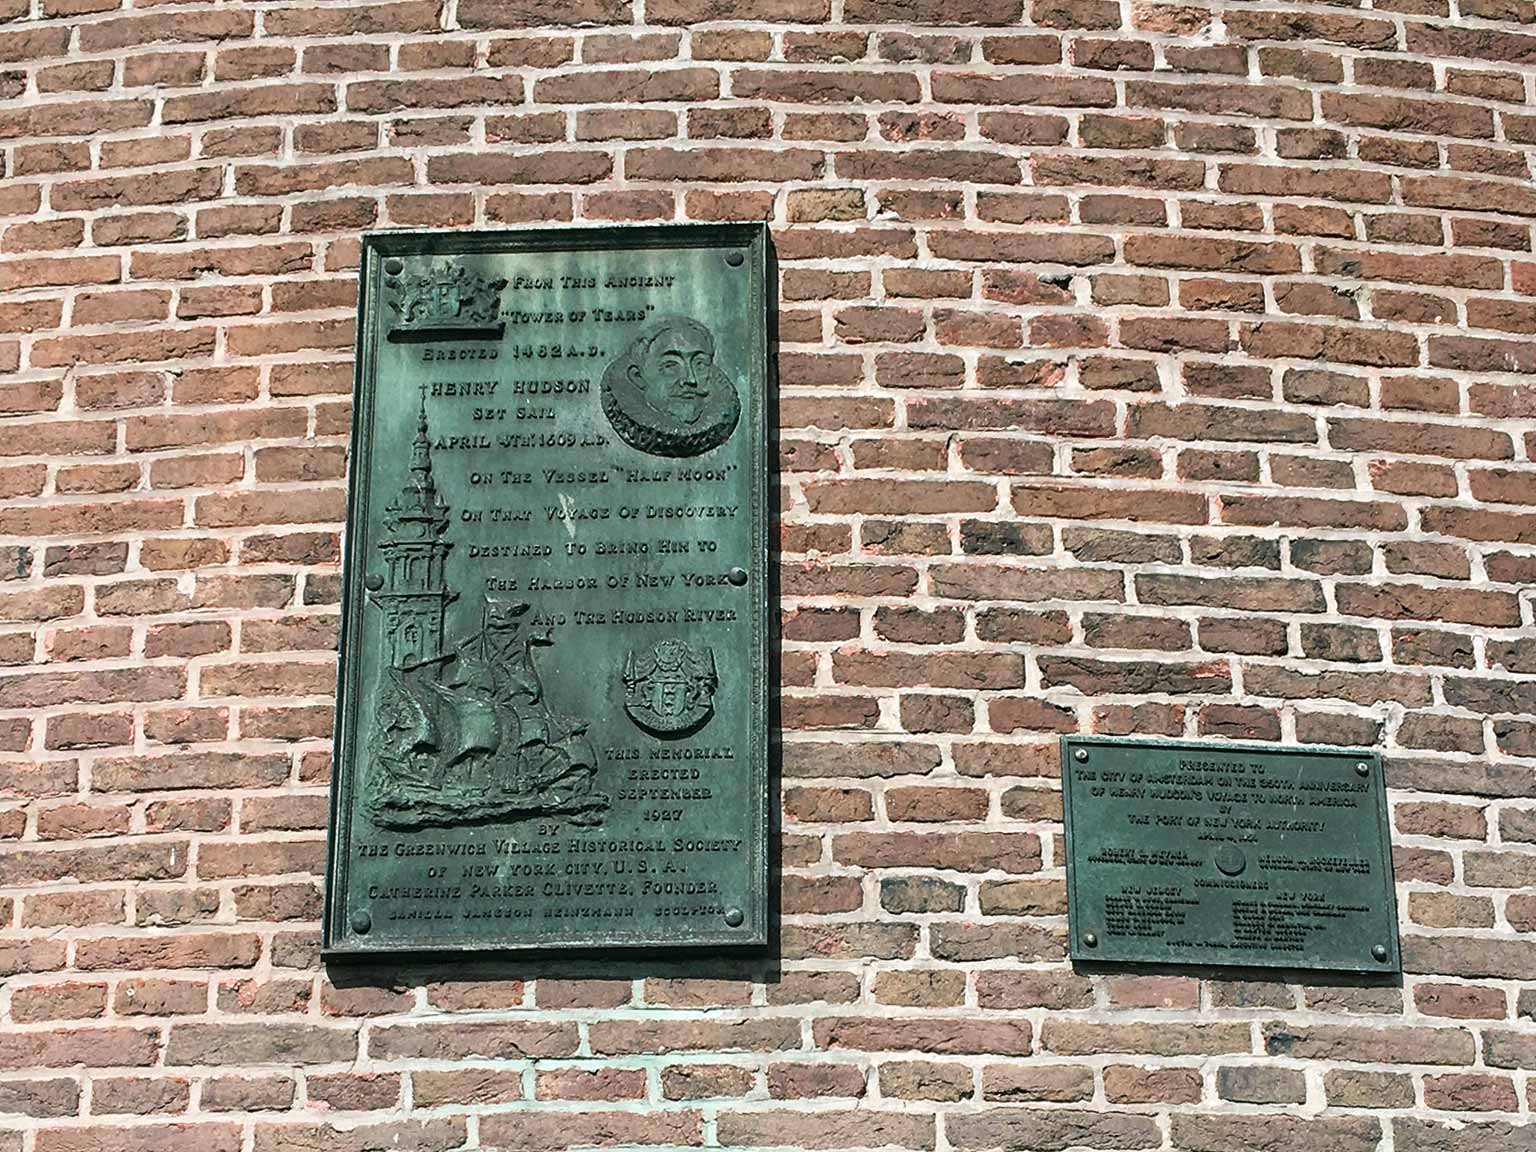 Plaquettes op de Schreierstoren, Amsterdam, Hudson's reis naar Amerika in 1609